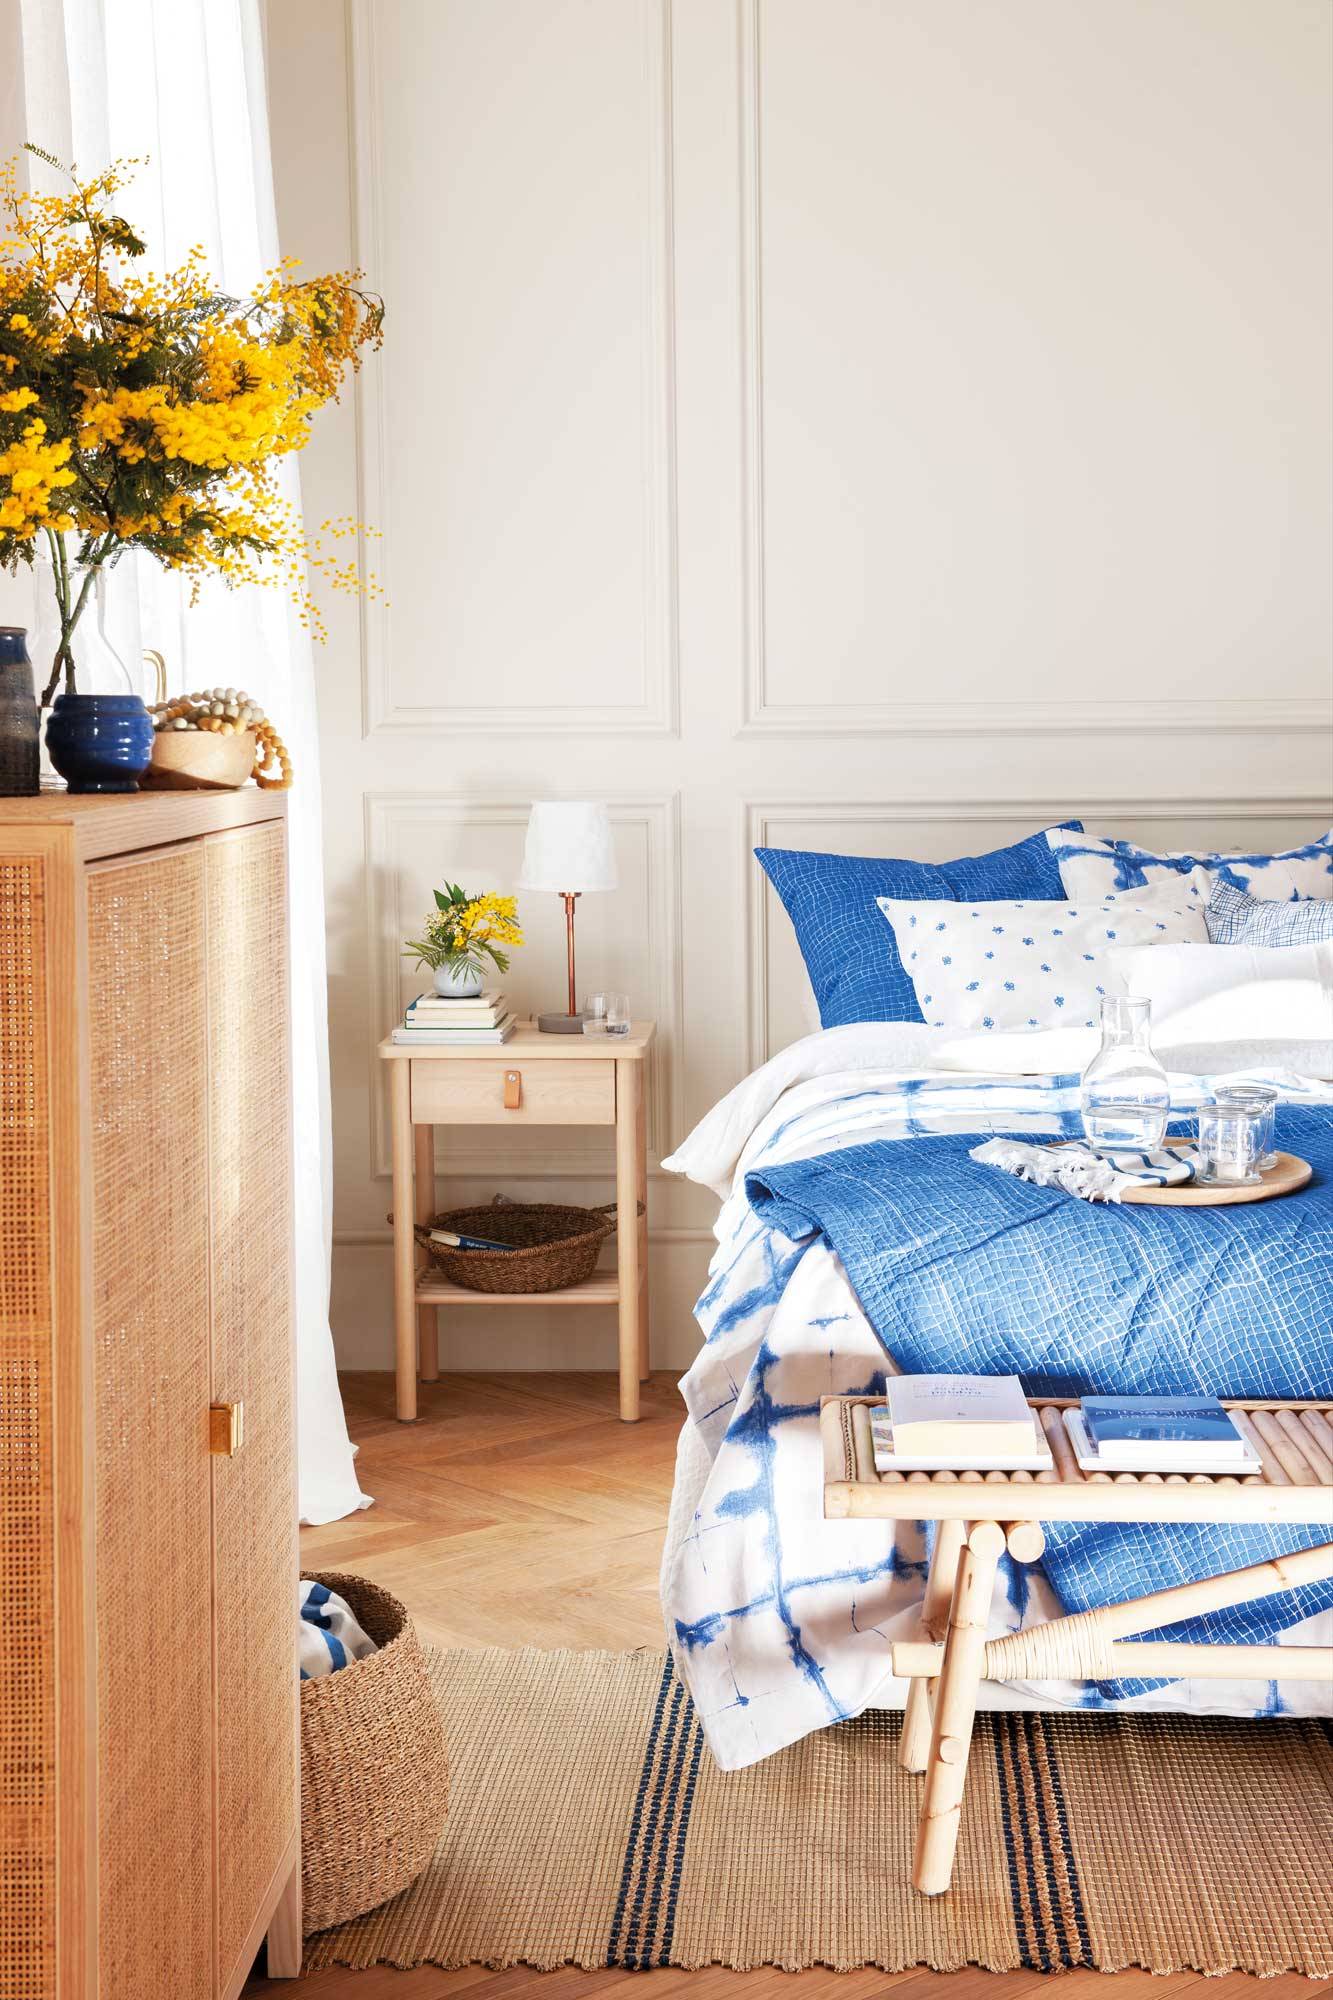 Tendencias decoración verano 2022: dormitorio decorado en azul y blanco